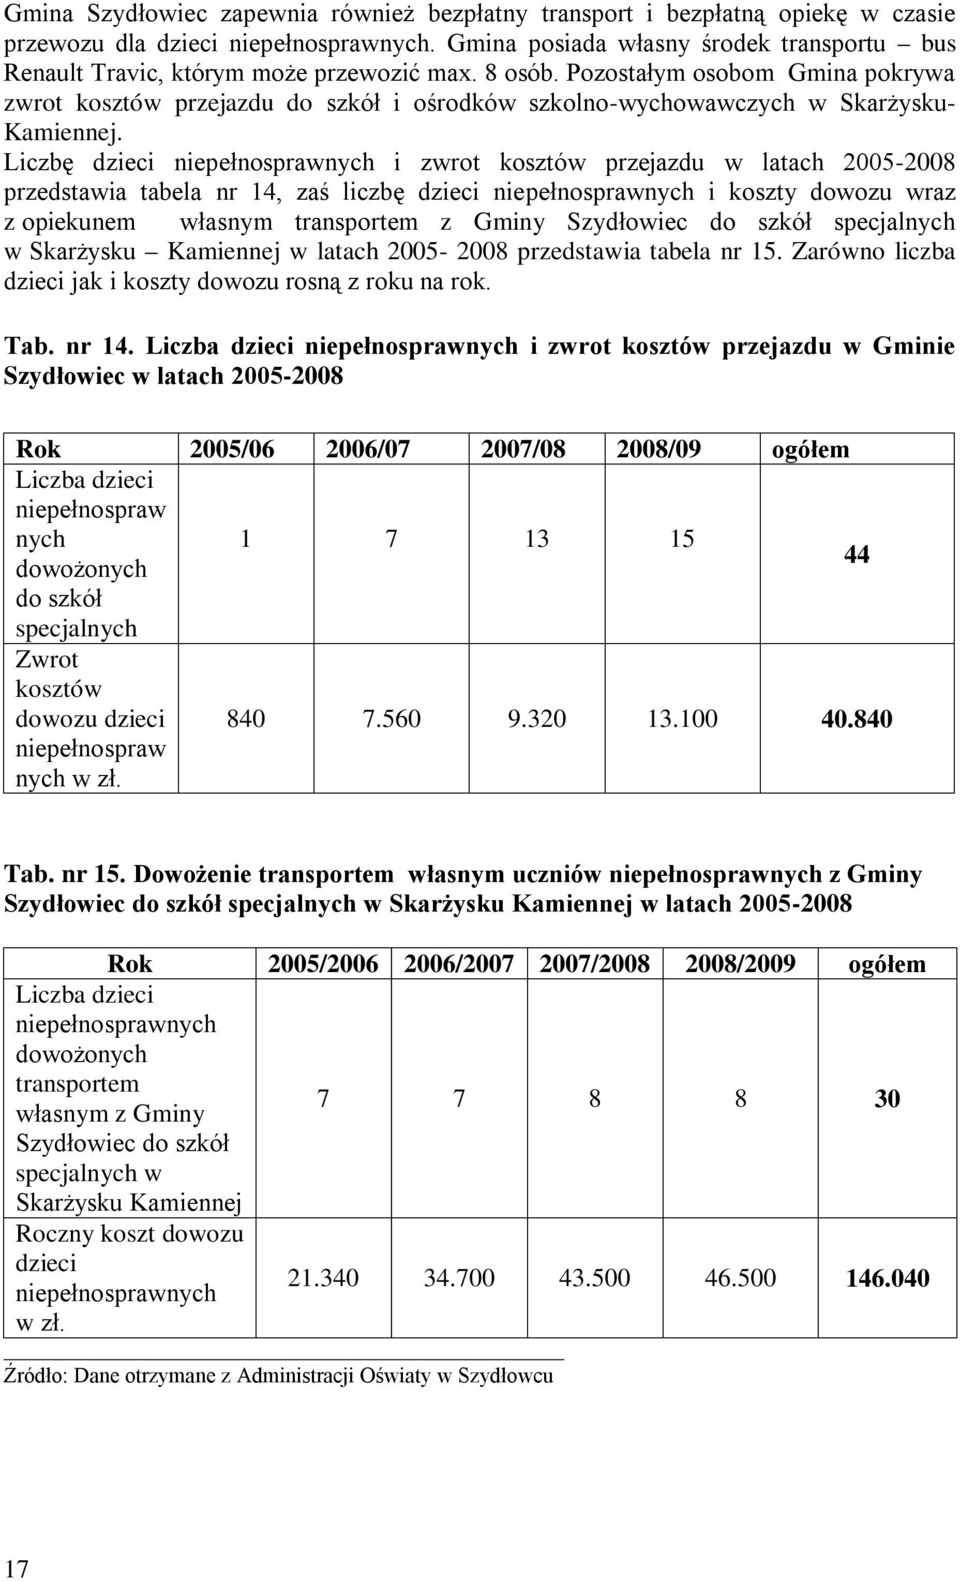 Pozostałym osobom Gmina pokrywa zwrot kosztów przejazdu do szkół i ośrodków szkolno-wychowawczych w Skarżysku- Kamiennej.